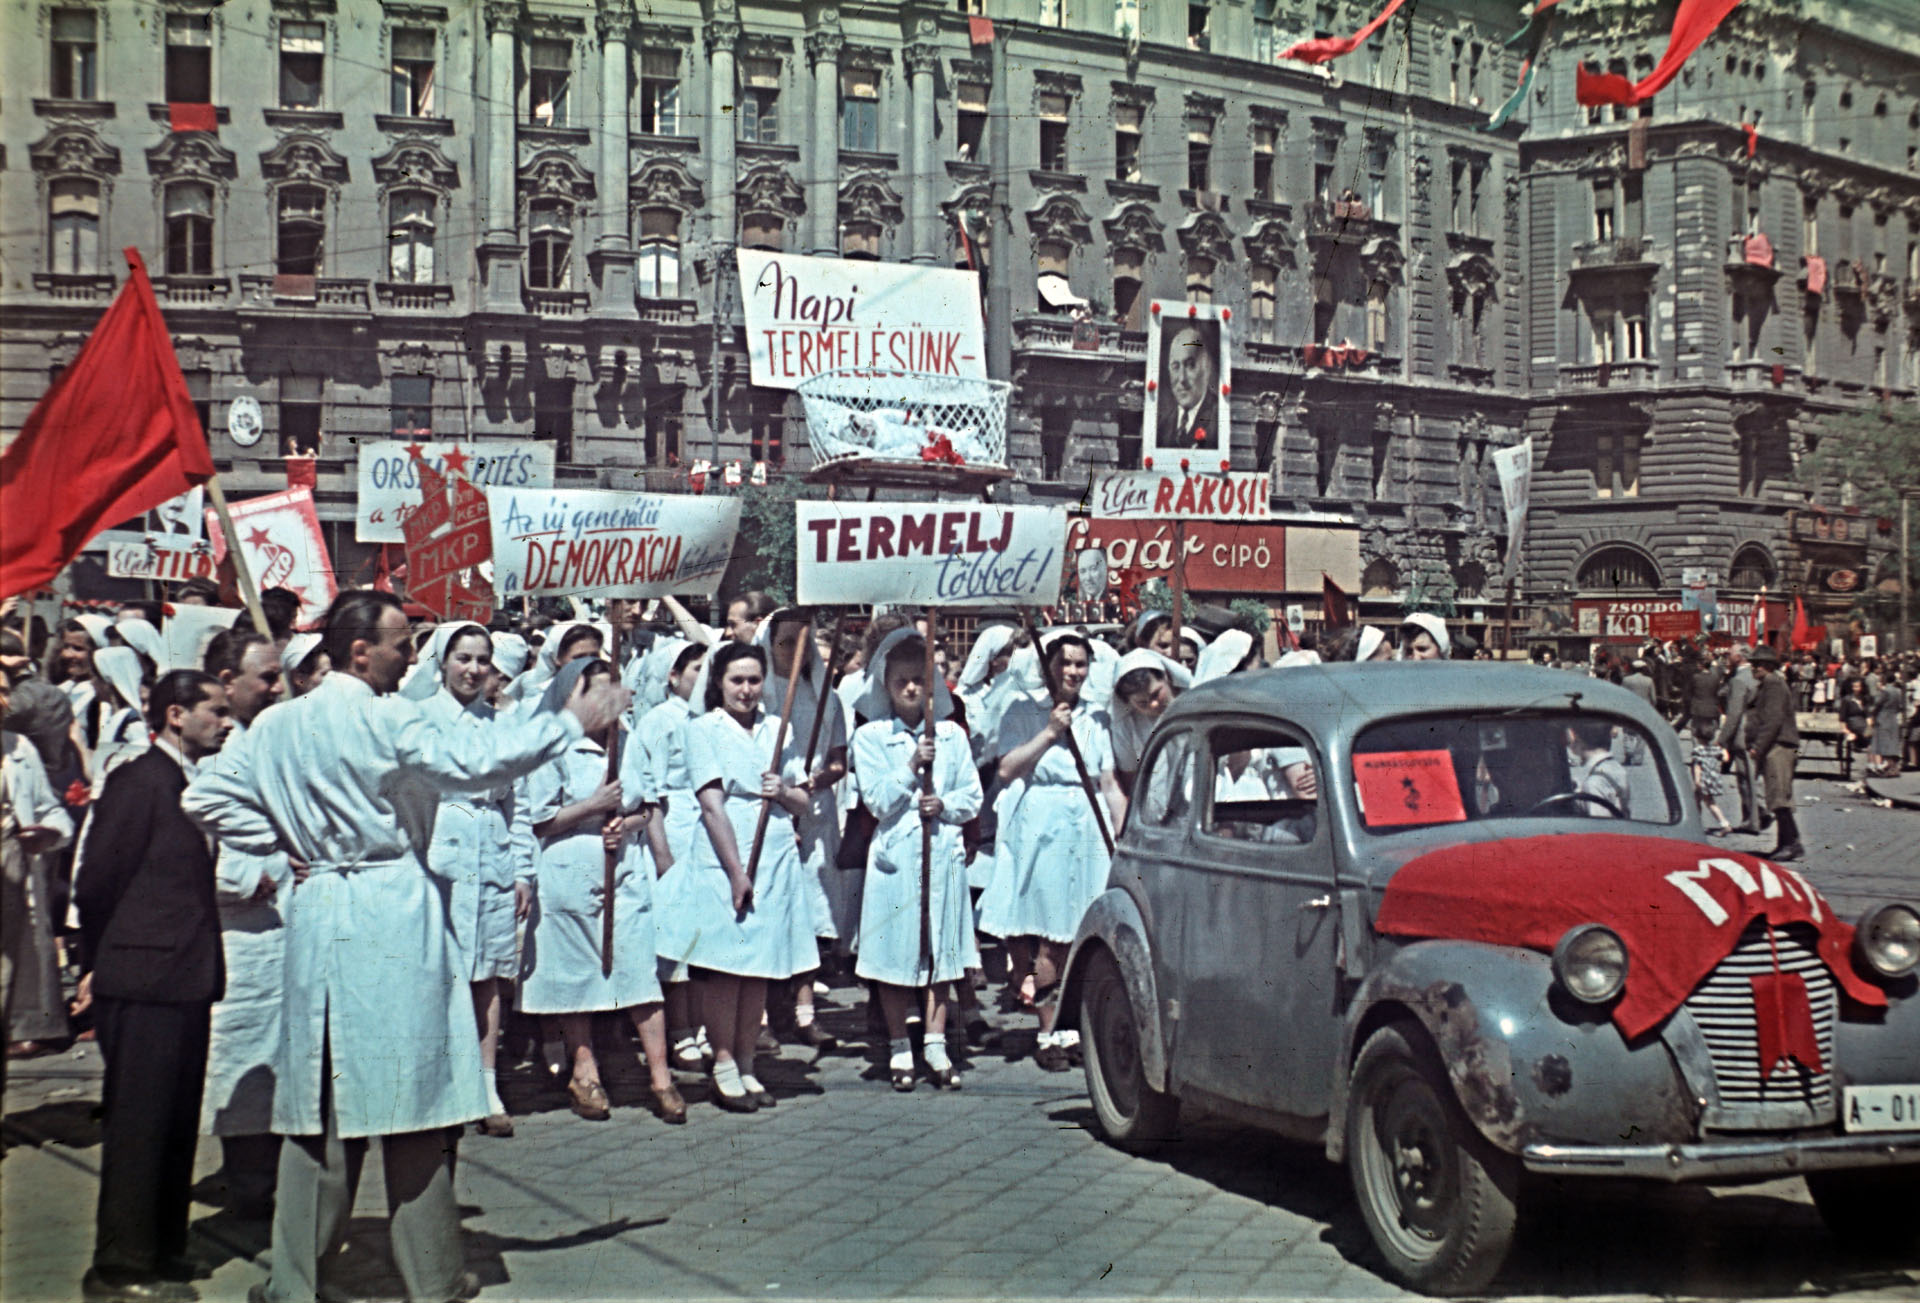 Nyugati (Marx) tér, jobbra a Váci út, május 1-i felvonulók (Fotó: Aszódi Zoltán/Fortepan)